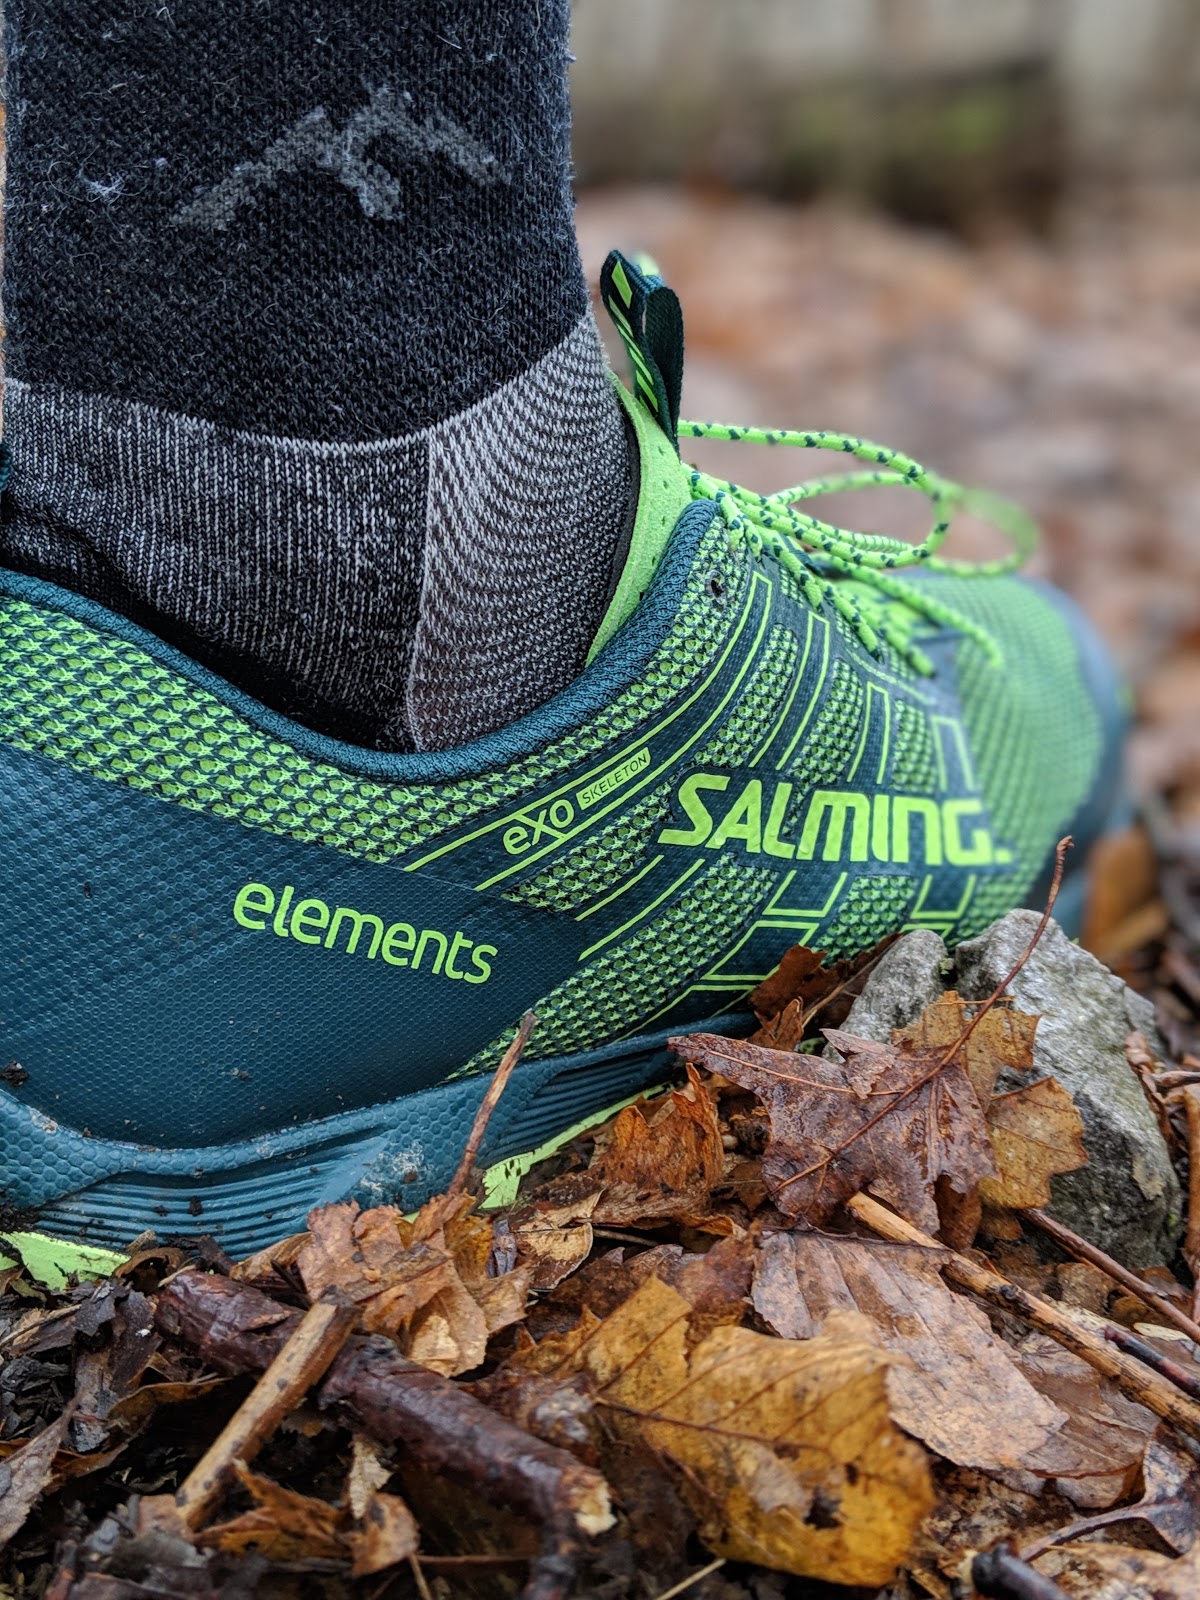 salming ot comp trail running shoe